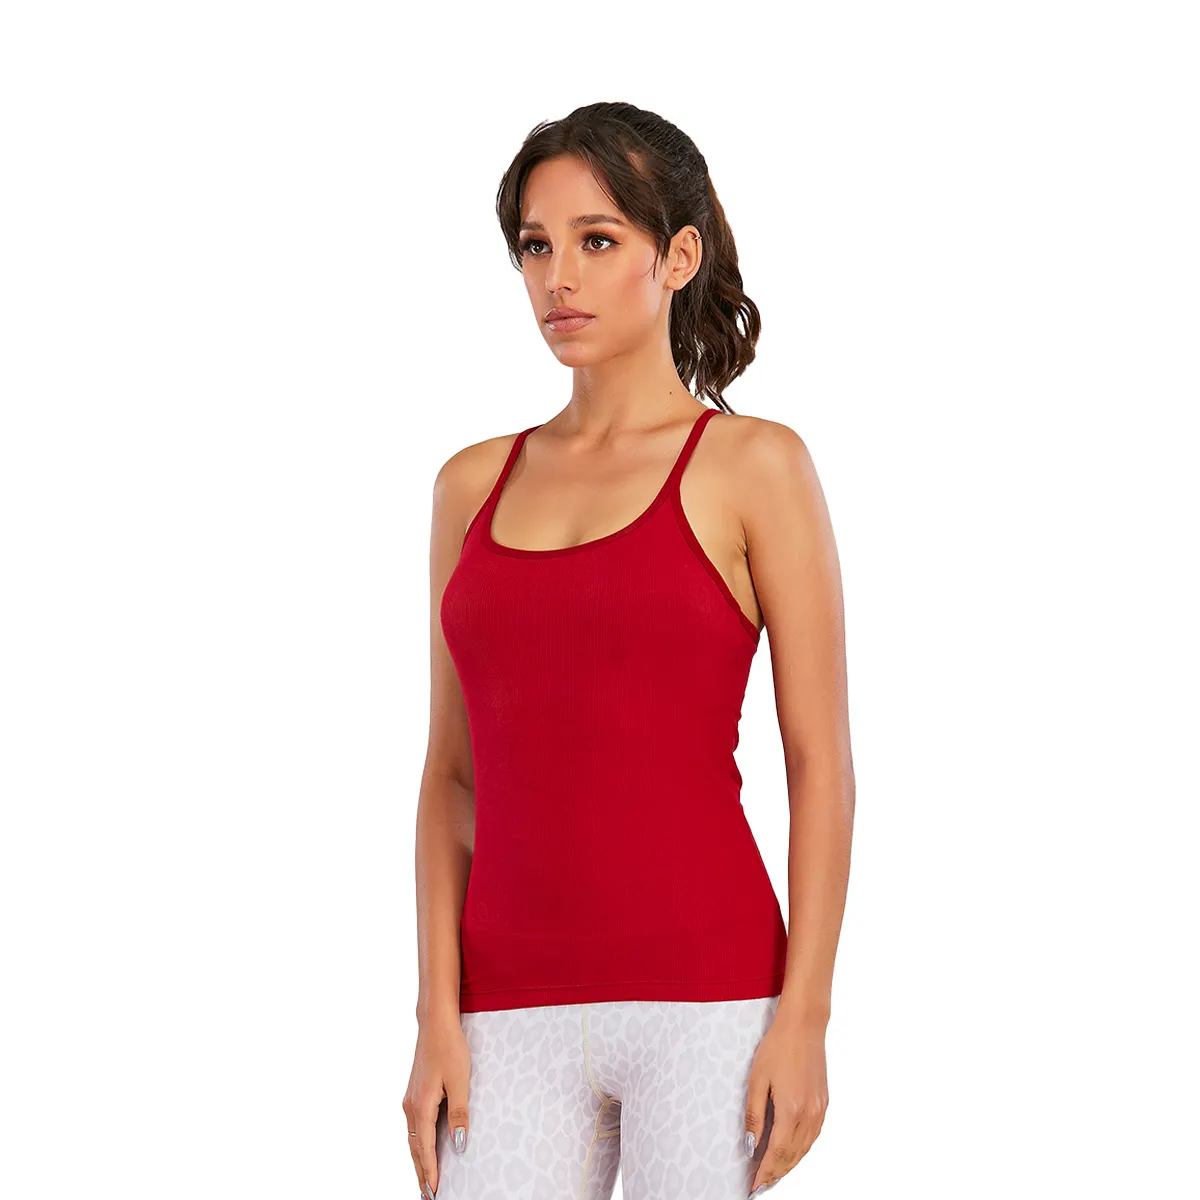 Camisetas sin mangas ajustadas de compresión para mujer, ropa de entrenamiento para fitness, yoga, color Rojo